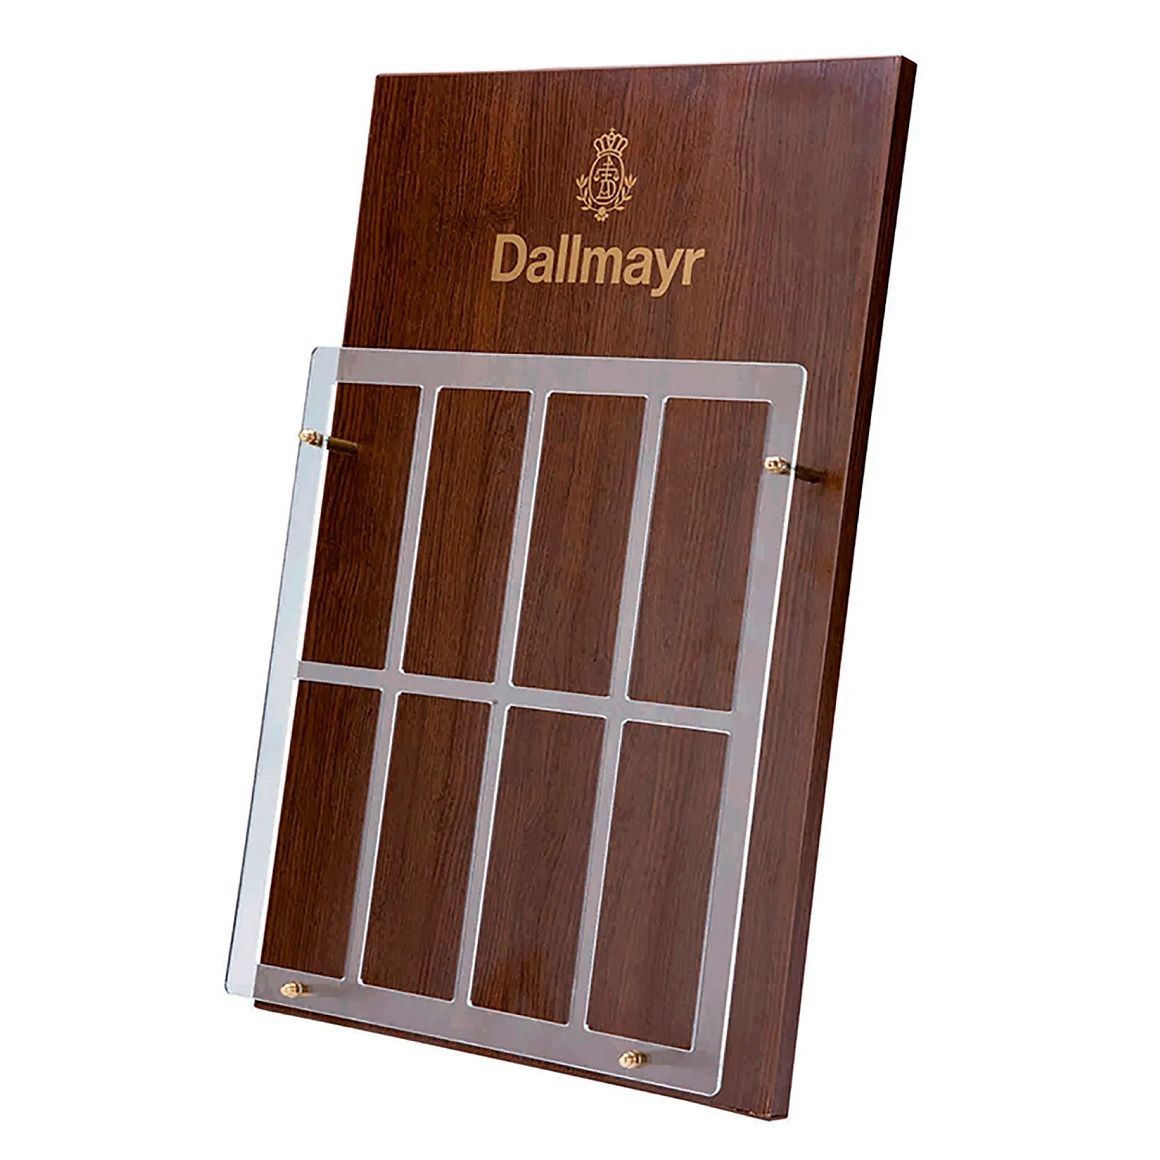 Individual counter display for Dallmayr